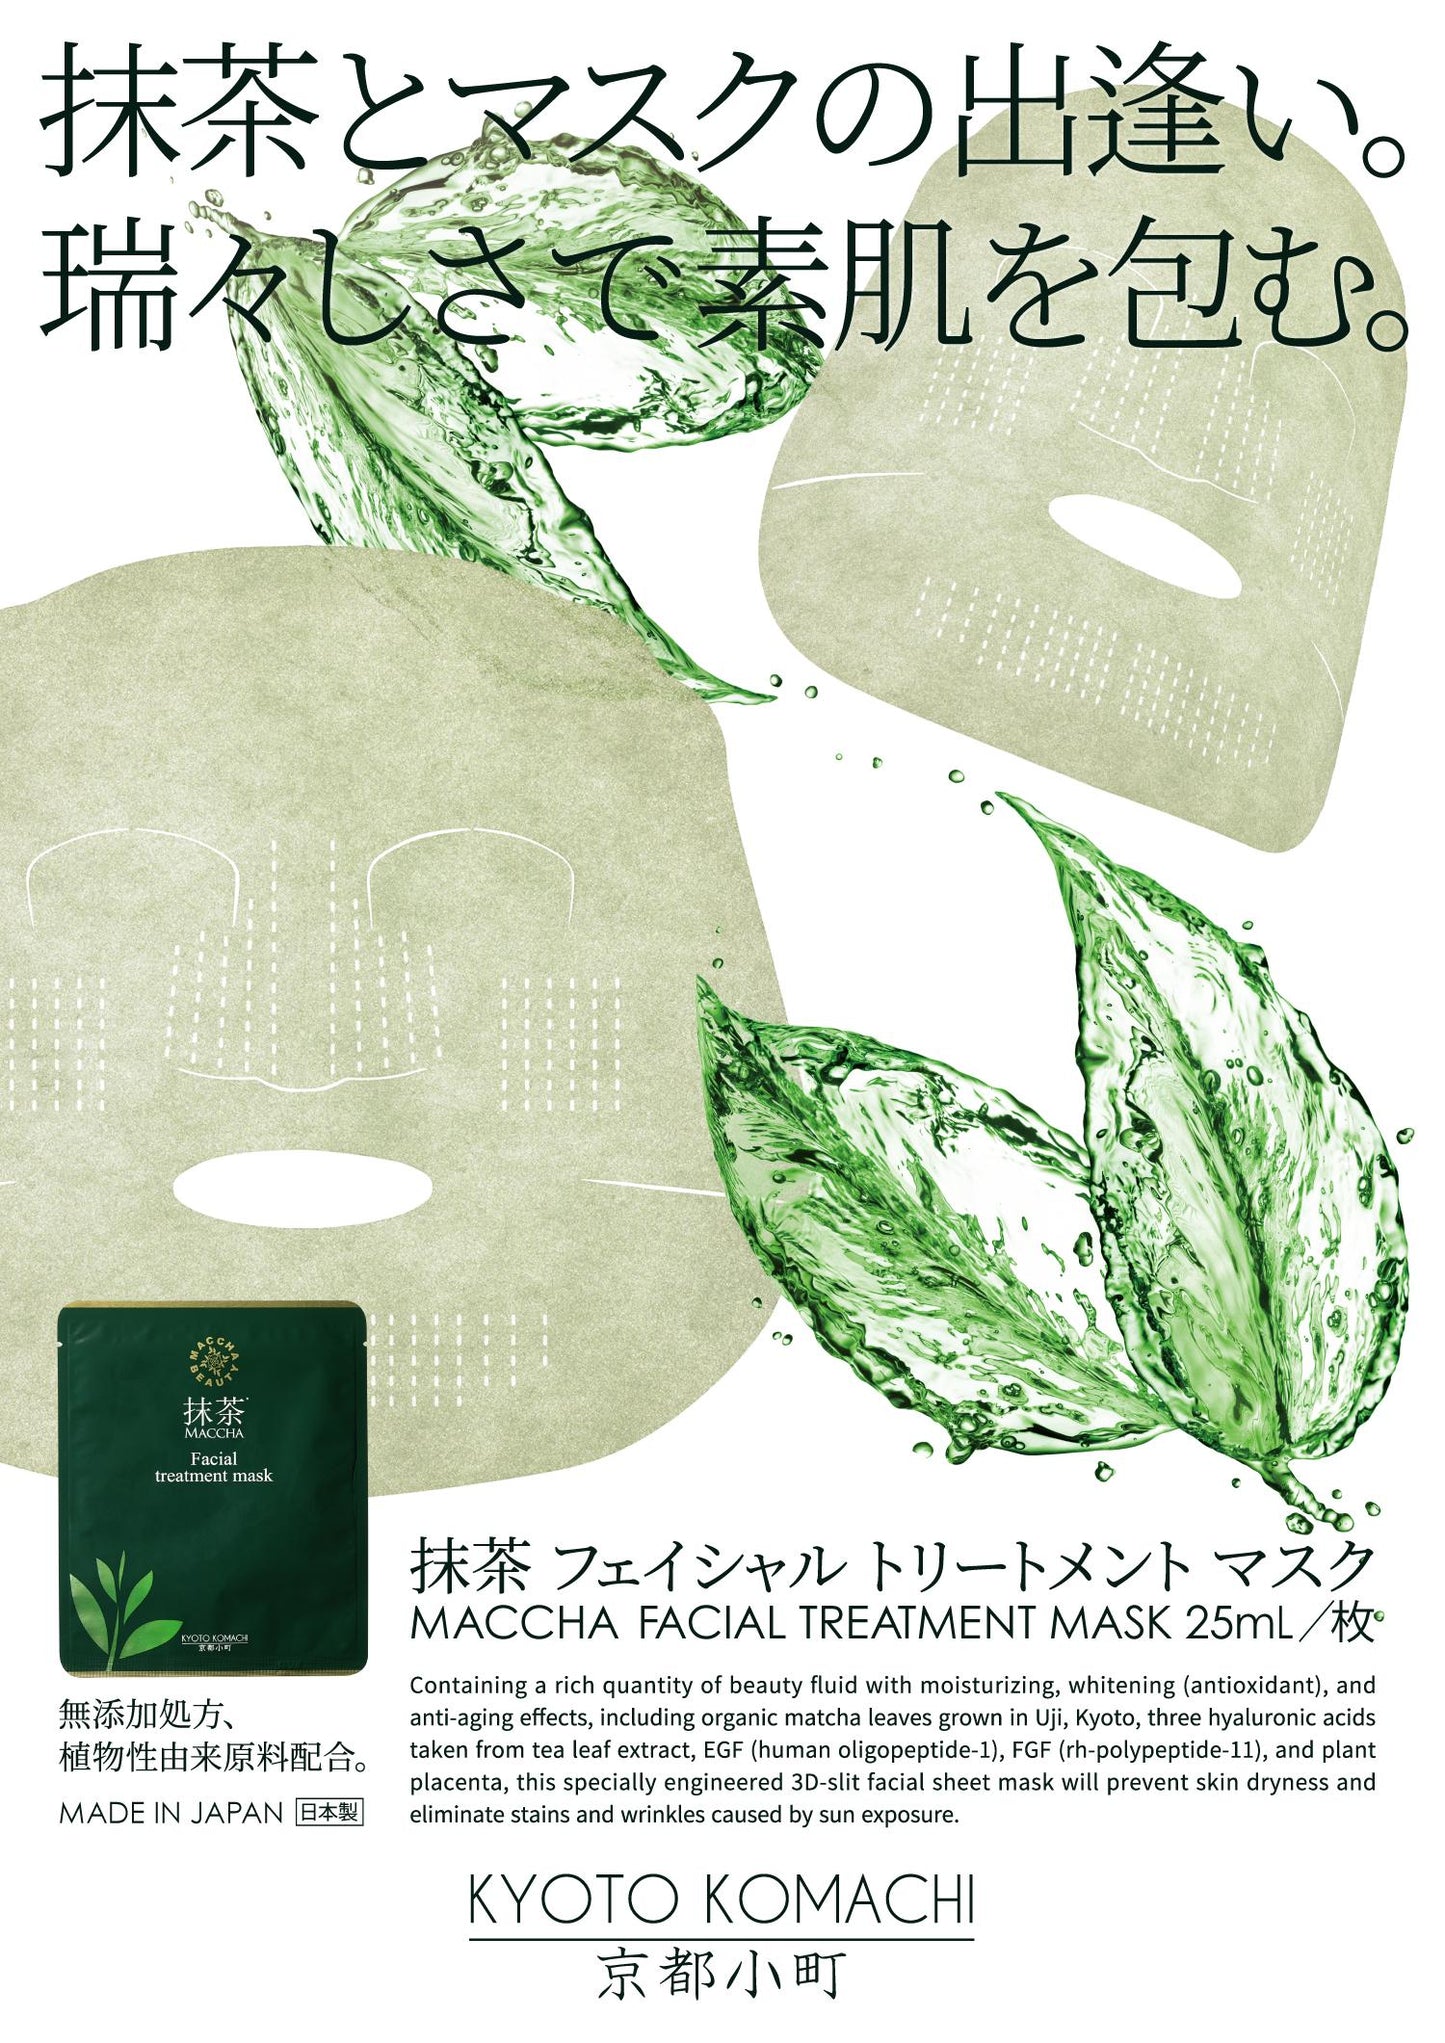 KYOTO KOMACHI Matcha Beauty Mask (1pc)